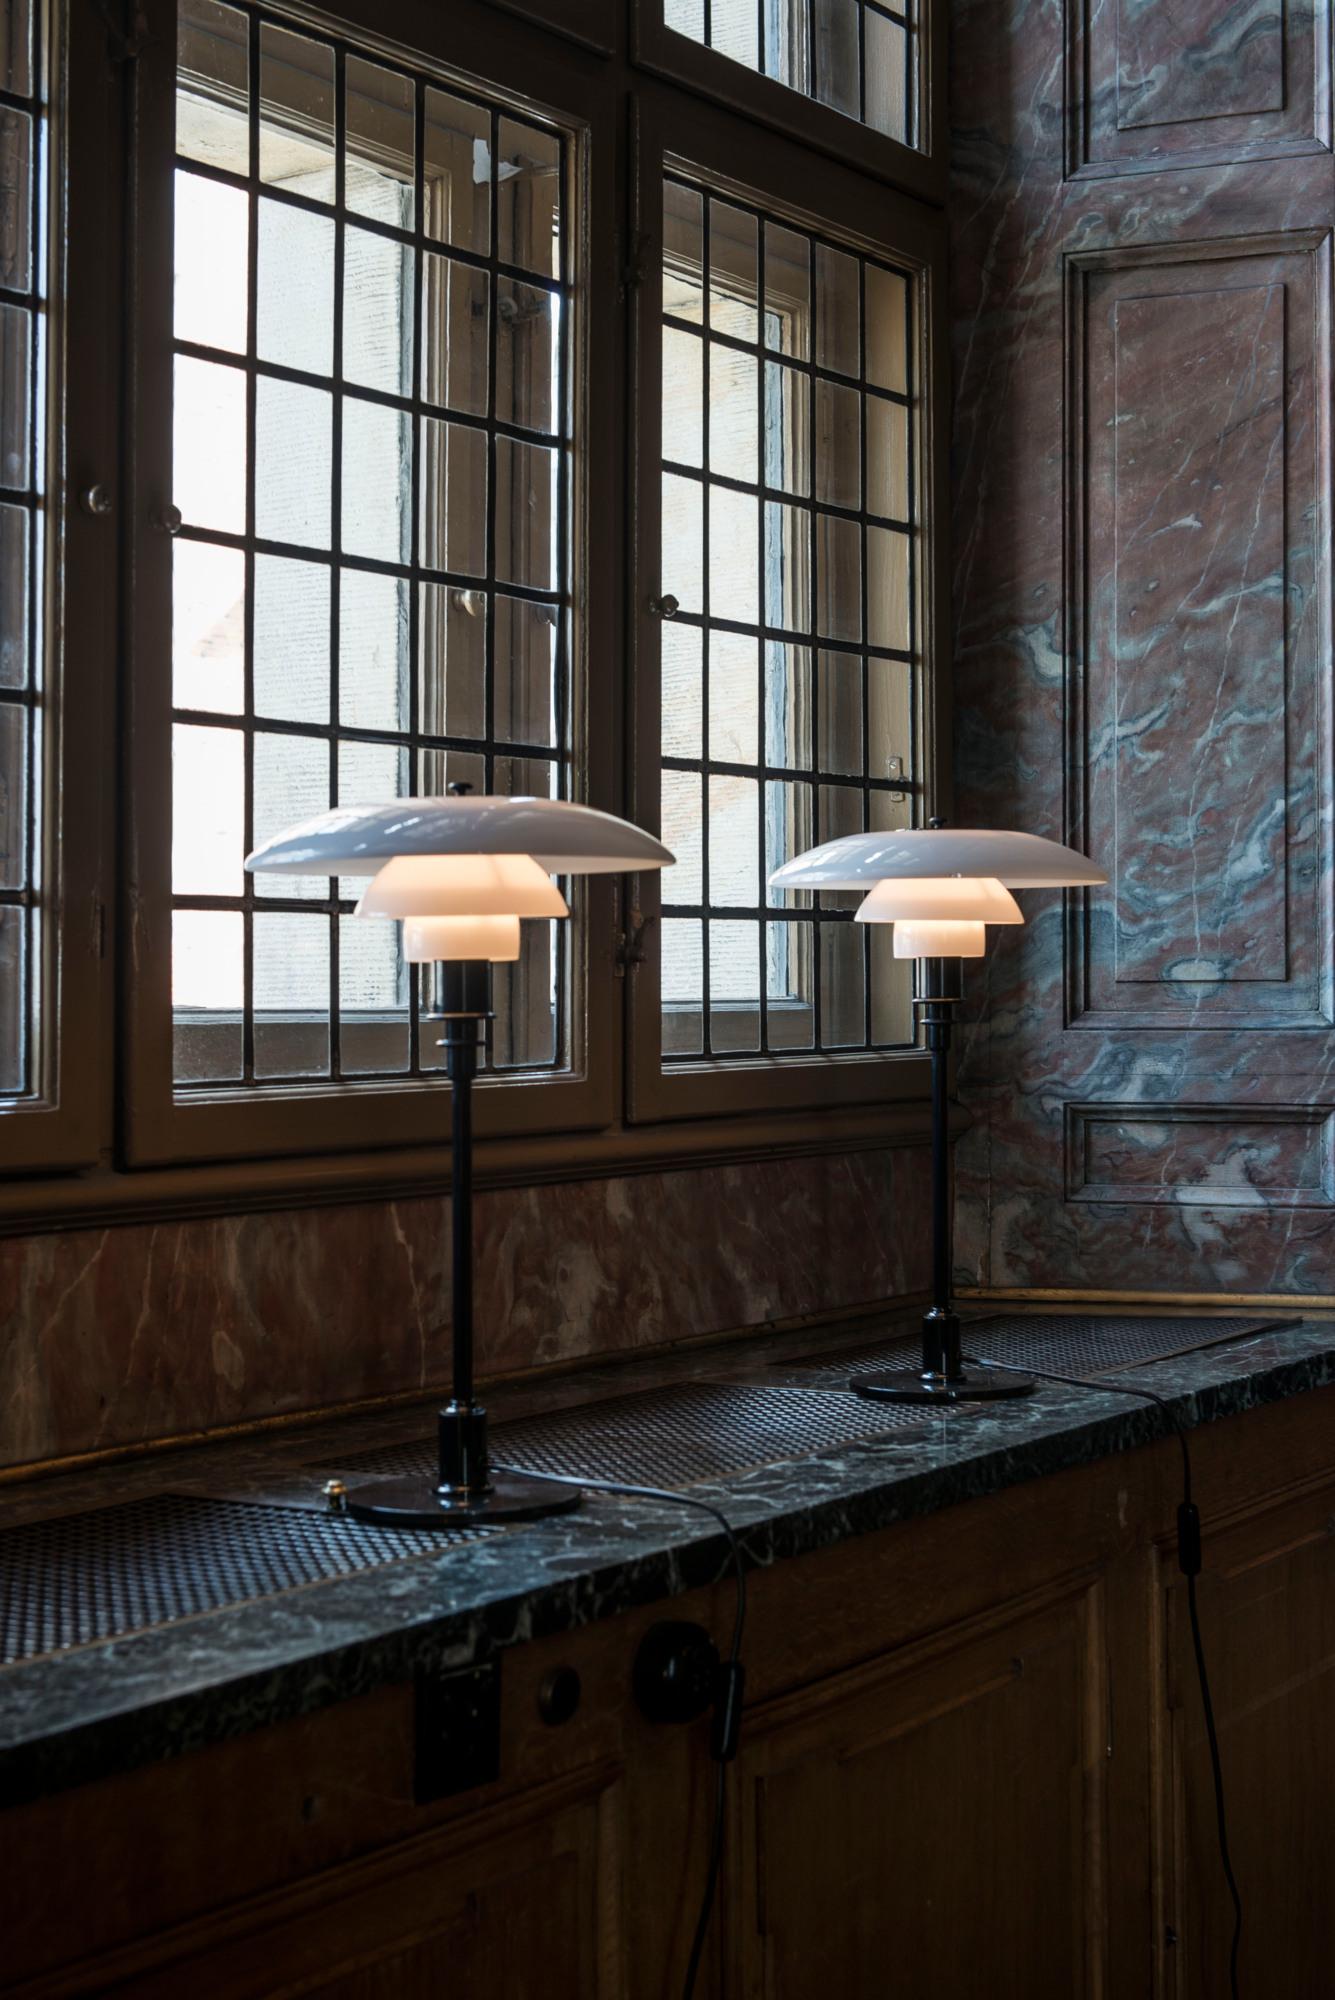 Lampe de table en verre opalin PH 3/2 de Poul Henningsen pour Louis Poulsen en noir.

Le design légendaire de Poul Henningsen découle de son propre et brillant système à trois abat-jour datant de la fin des années 1920. Le design original de